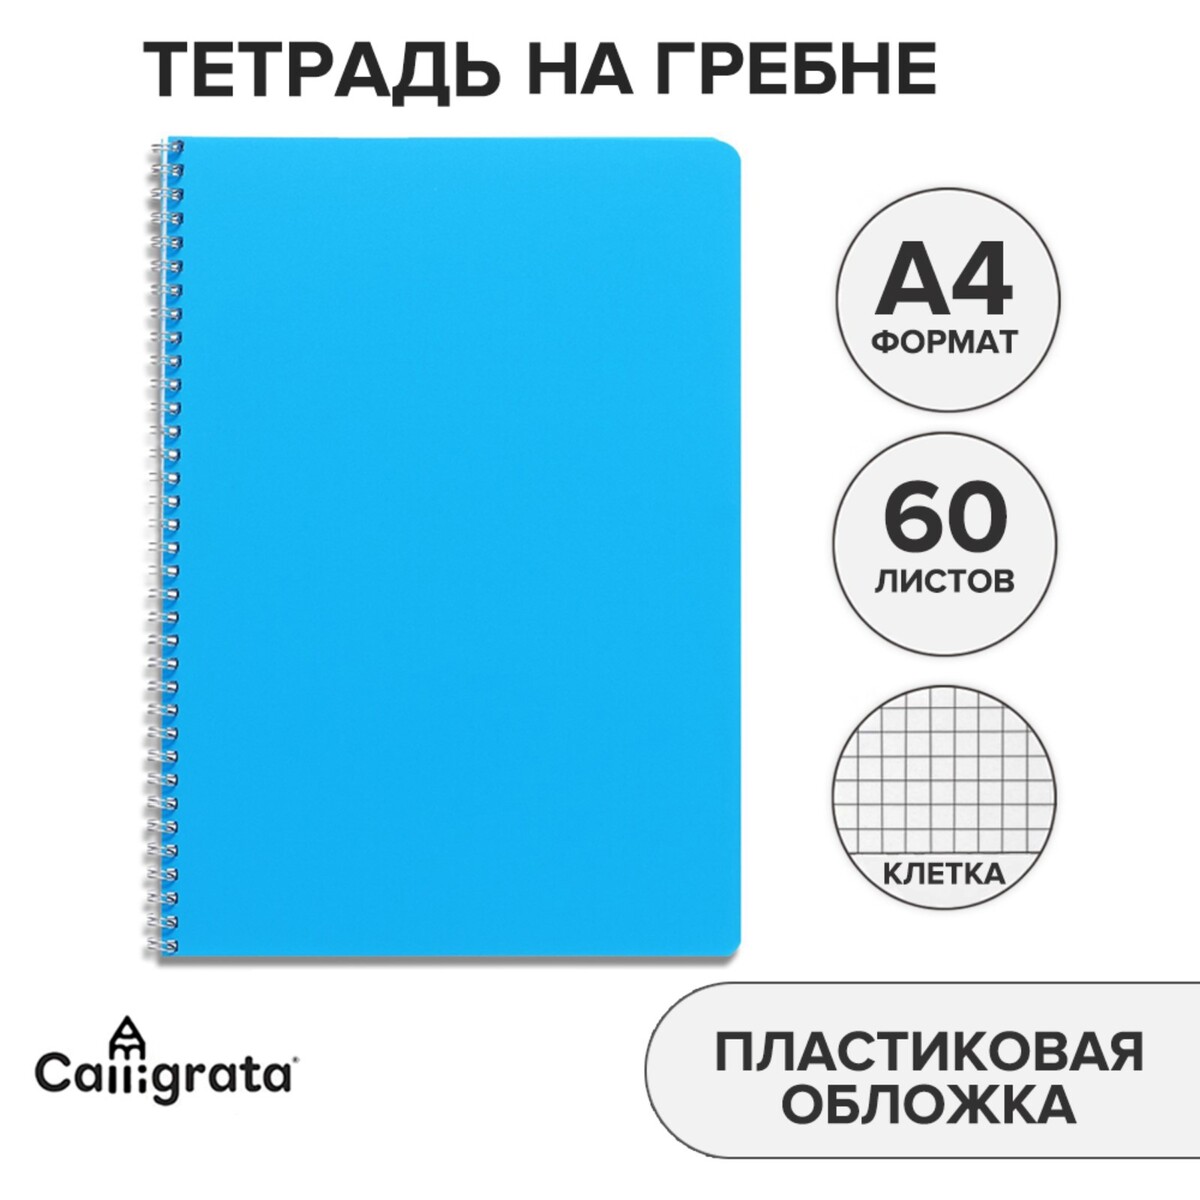 Тетрадь на гребне a4 60 листов в клетку голубая, пластиковая обложка, блок офсет